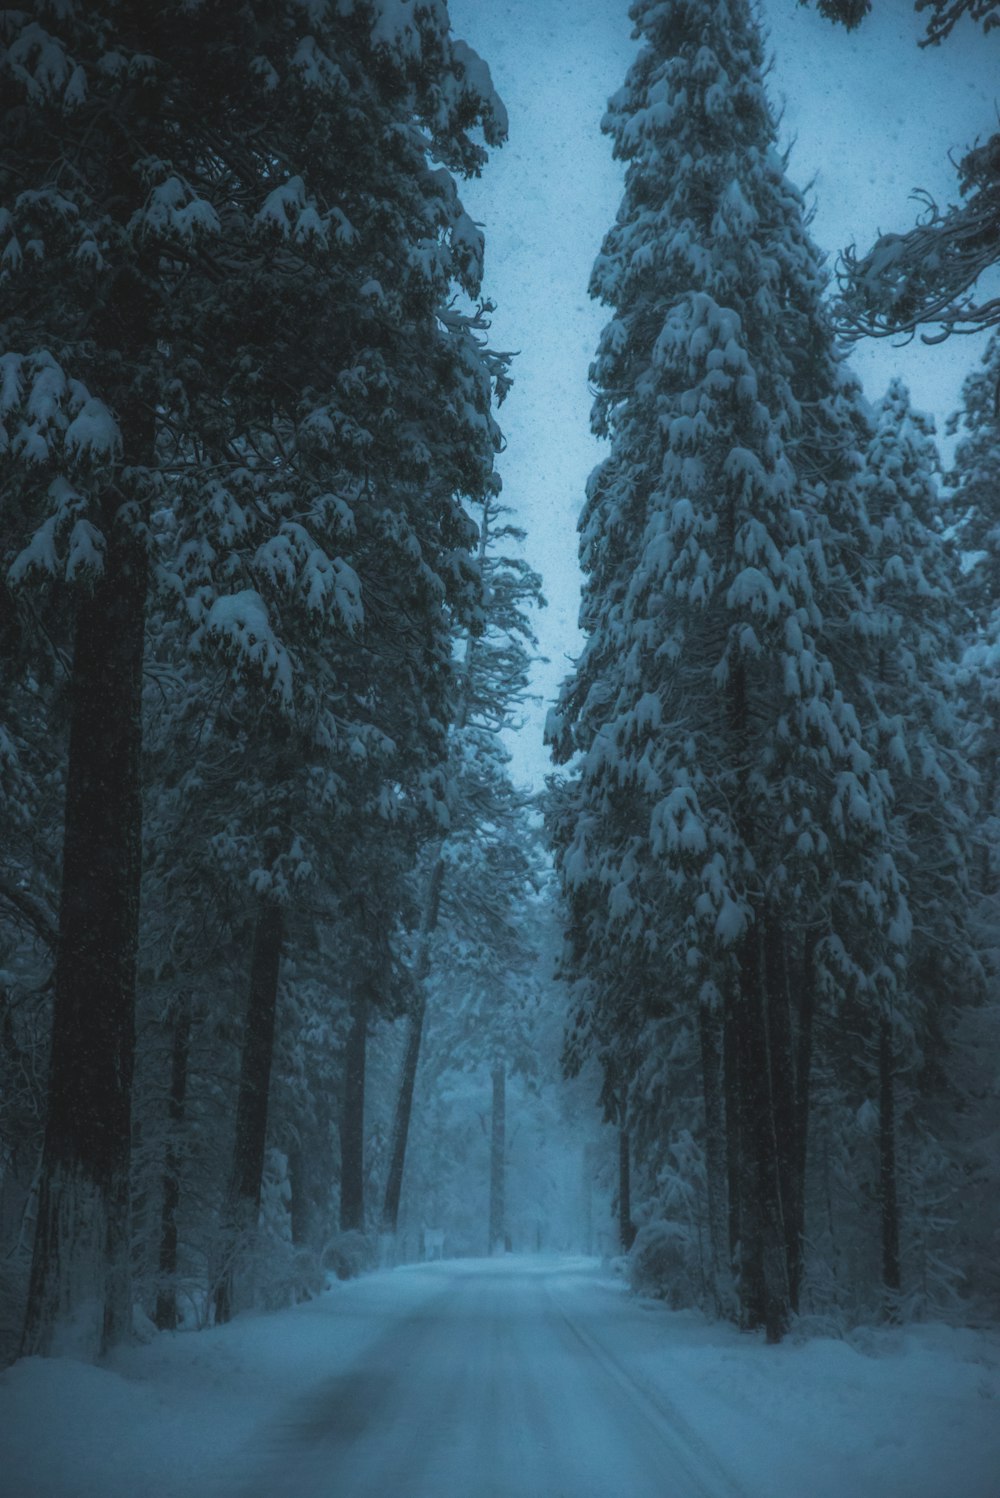 carretera rodeada de árboles cubiertos de nieve